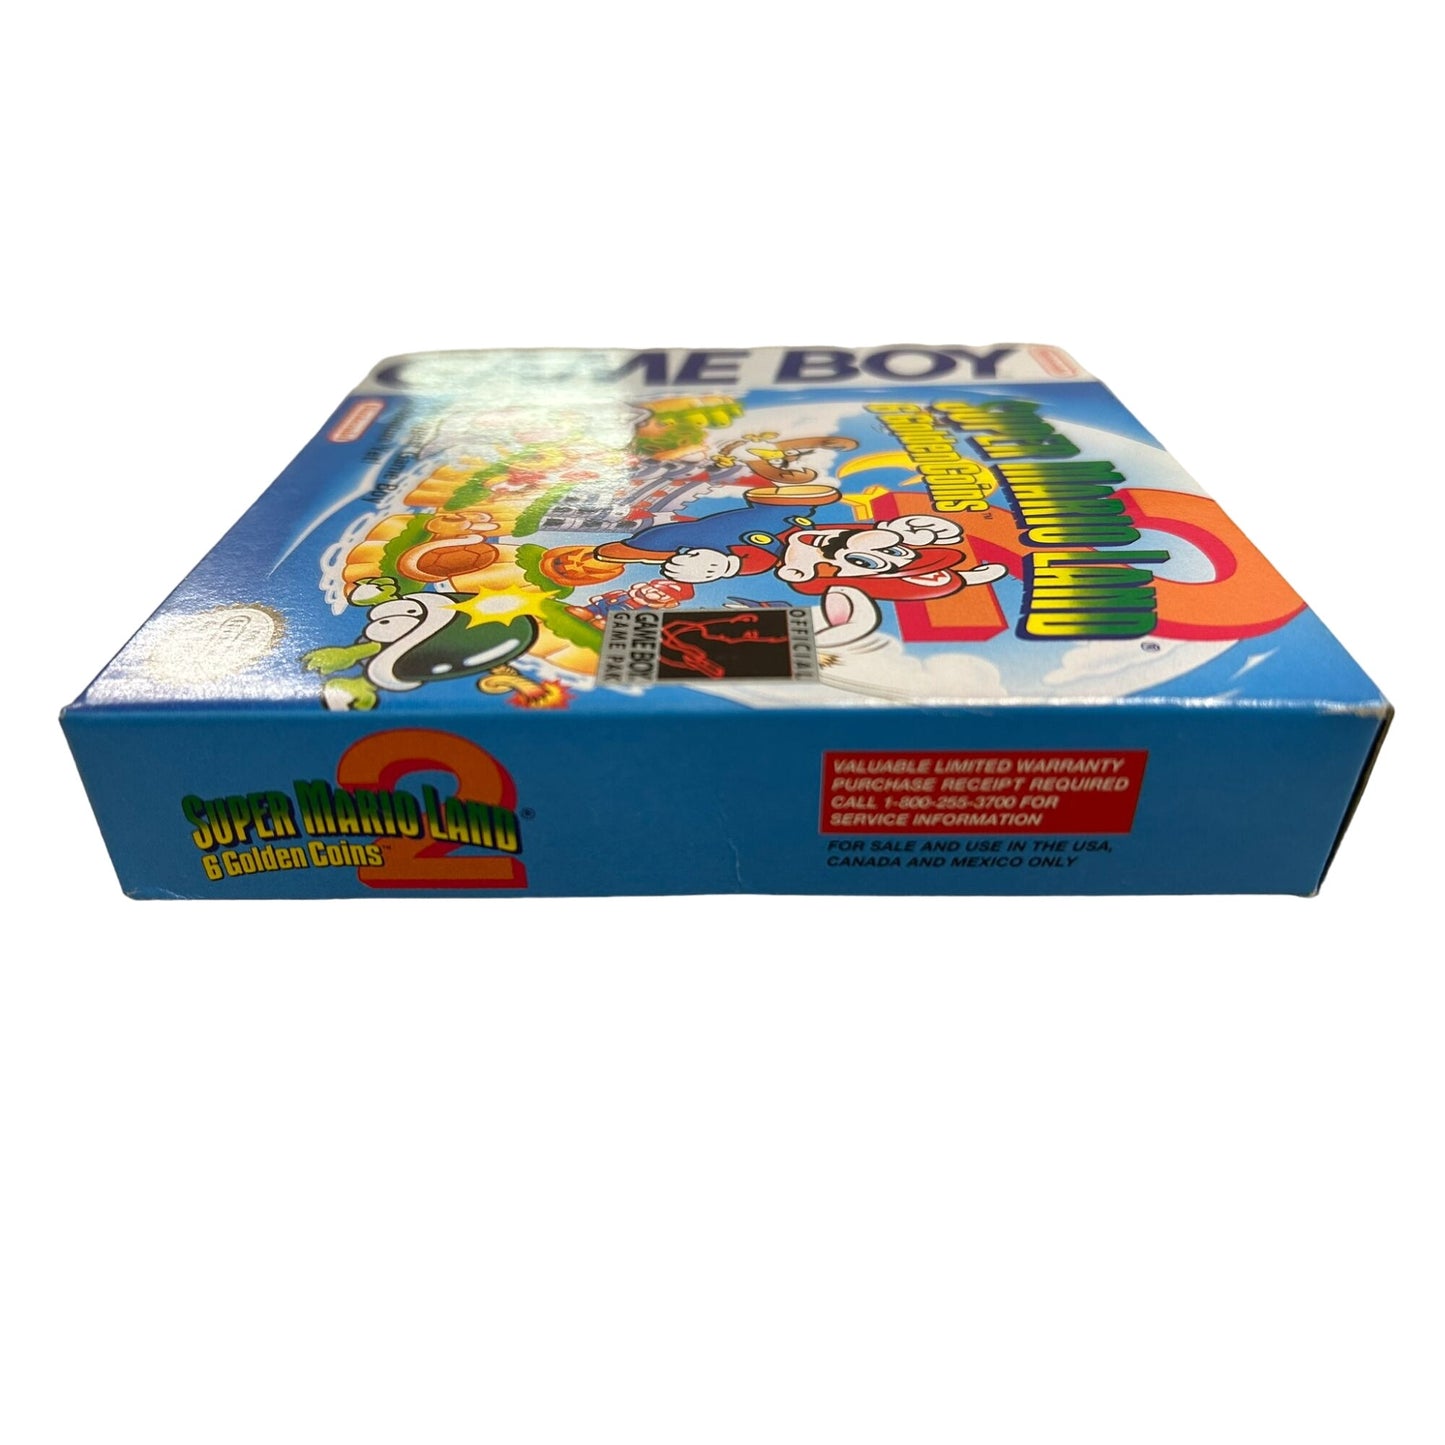 Super Mario Land 2 - 6 Golden Coins (Nintendo Gameboy, 1992) Box game and manual